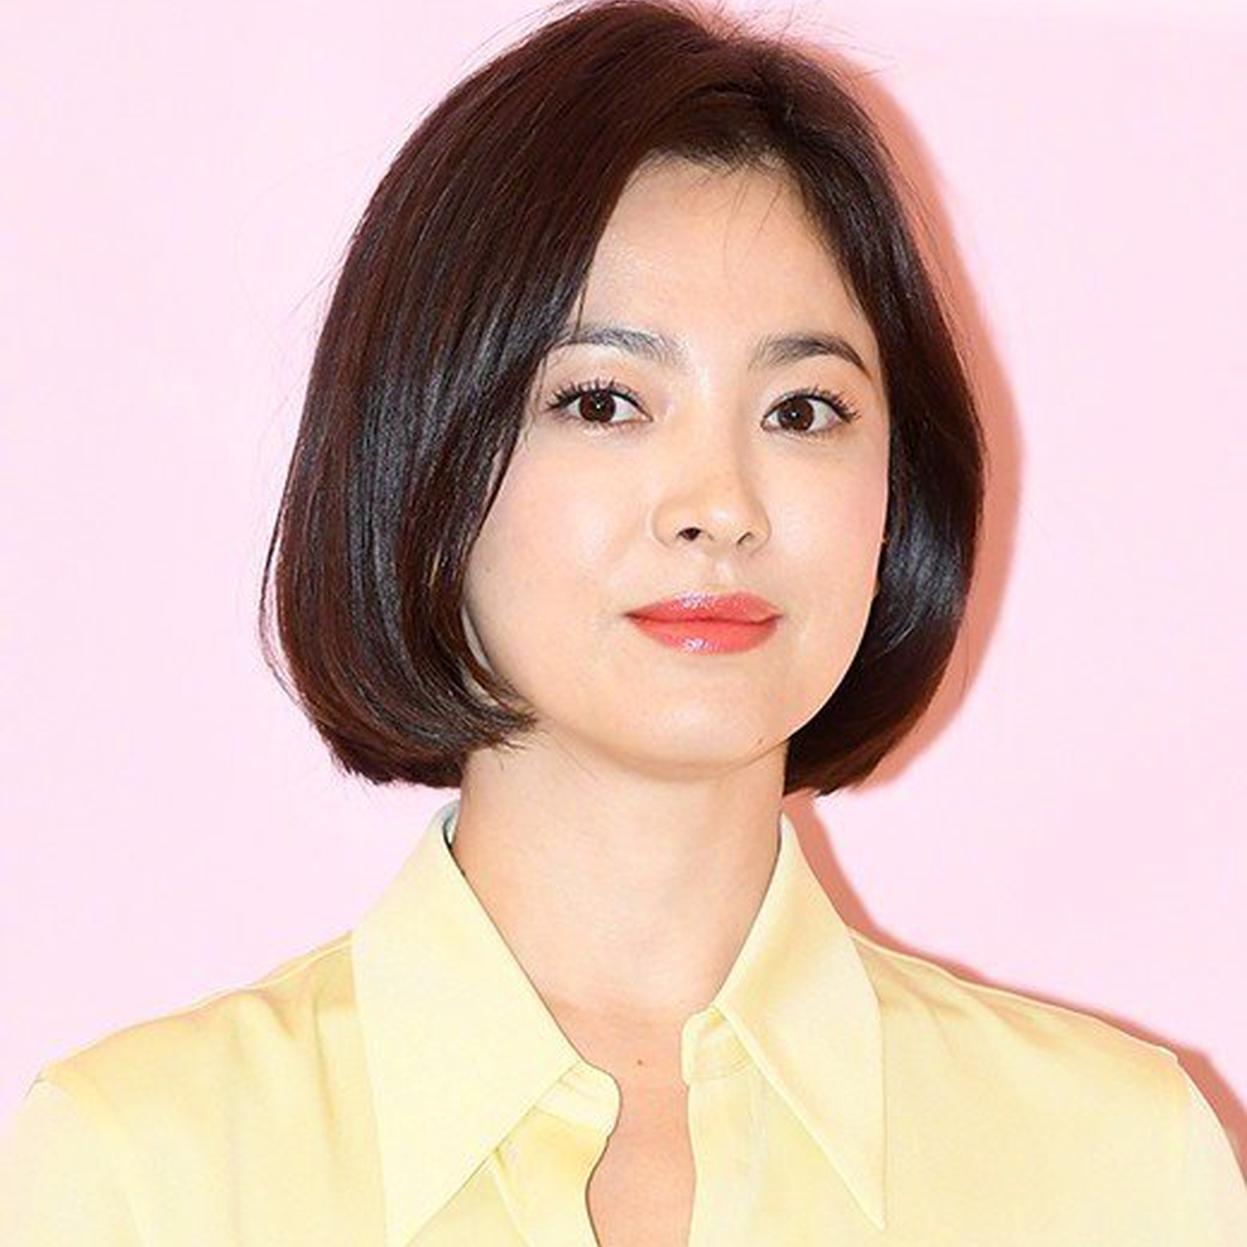  Nữ diễn viên Song Hye Kyo mạnh tay với những đối tượng bôi nhọ danh dự của mình trong suốt thời gian qua